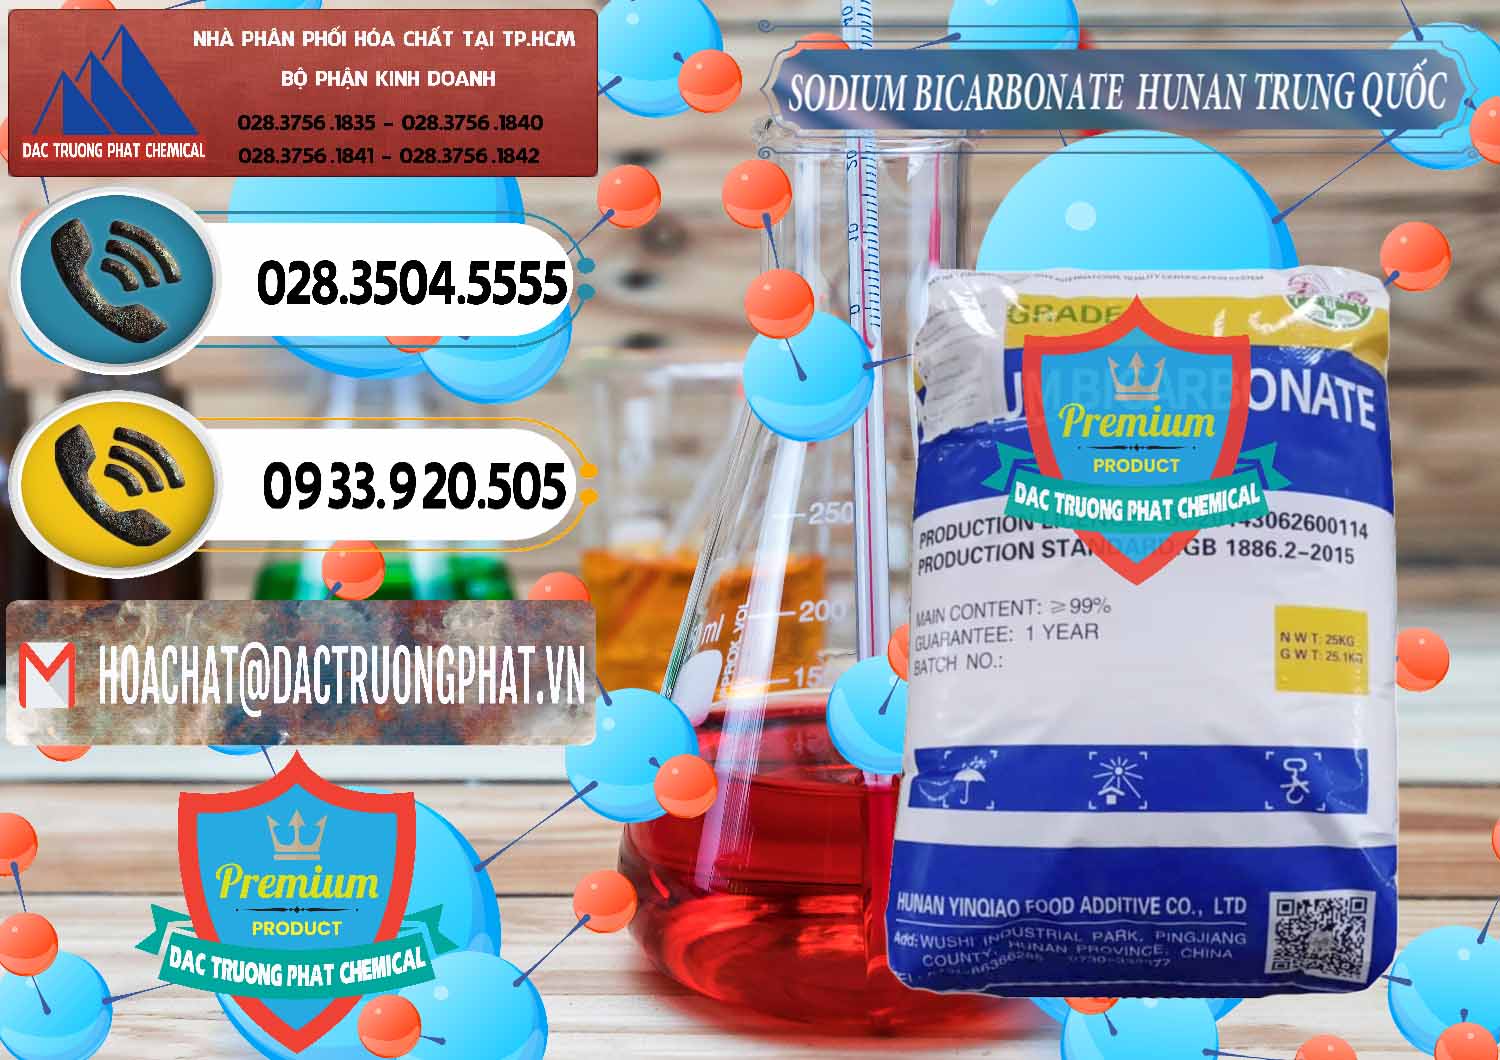 Cty chuyên bán - cung ứng Sodium Bicarbonate – Bicar NaHCO3 Hunan Trung Quốc China - 0405 - Công ty cung cấp _ phân phối hóa chất tại TP.HCM - hoachatdetnhuom.vn